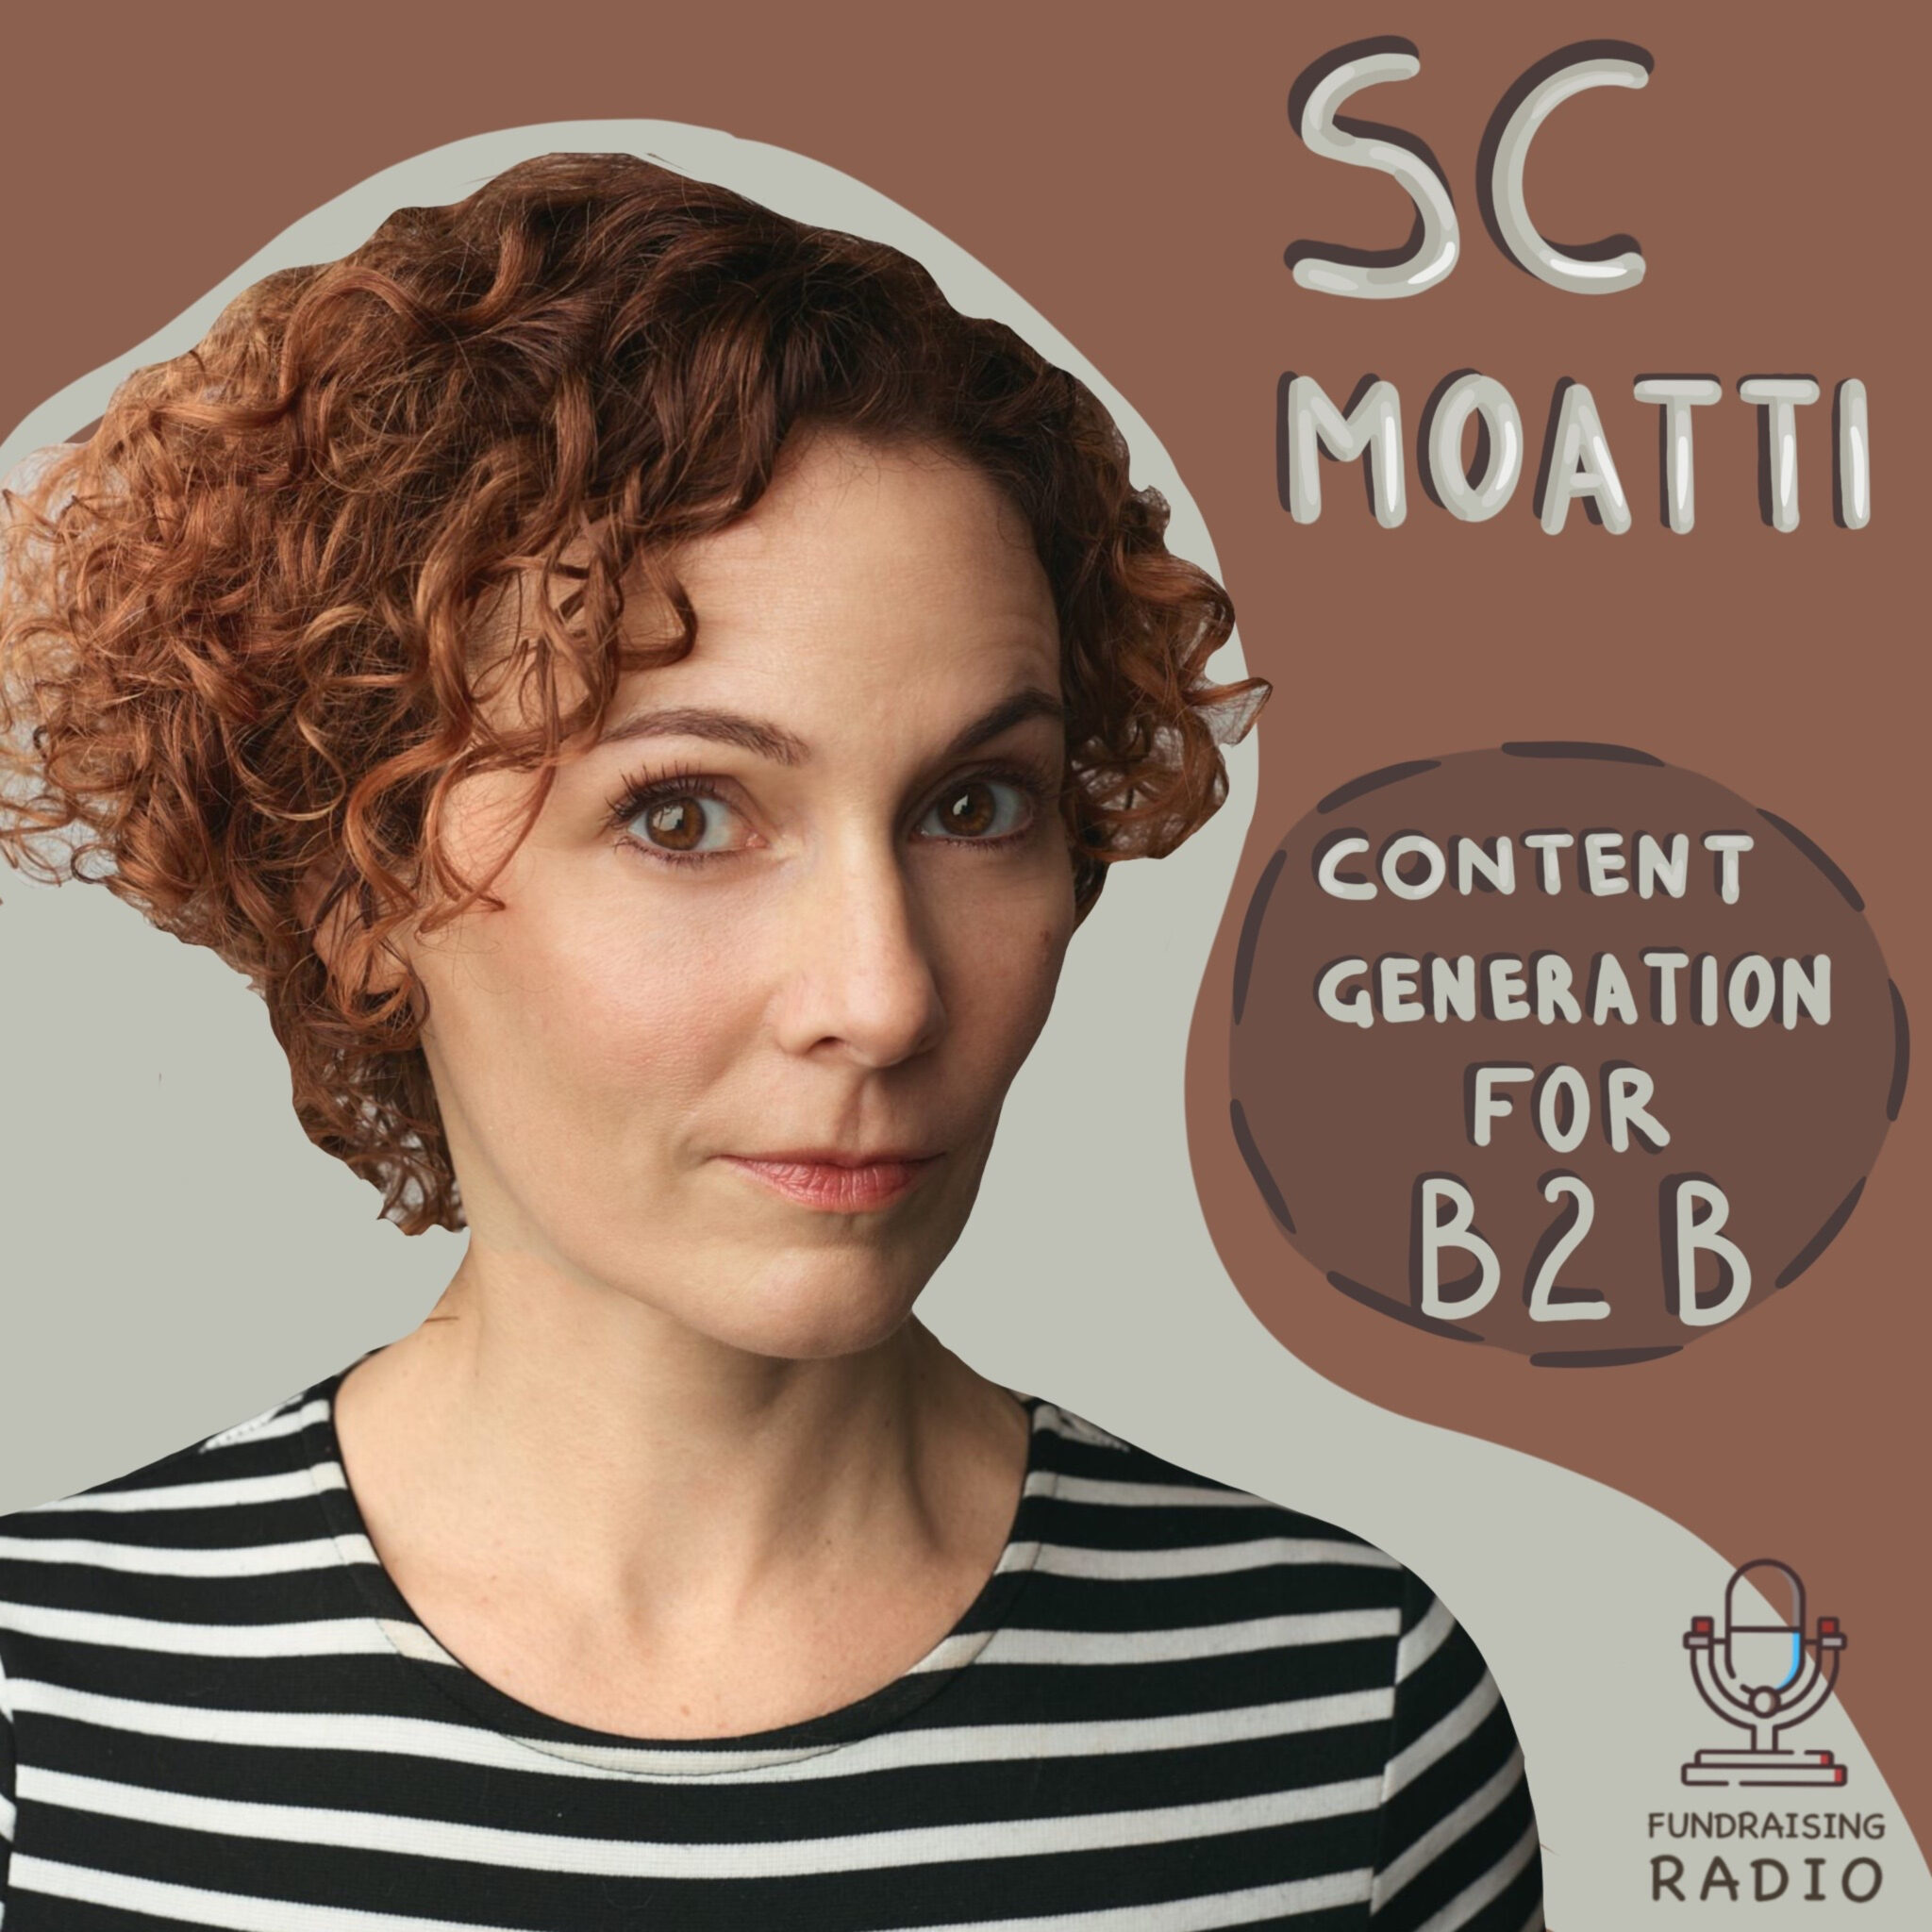 SC Moatti Interviewed on Fundraising Radio